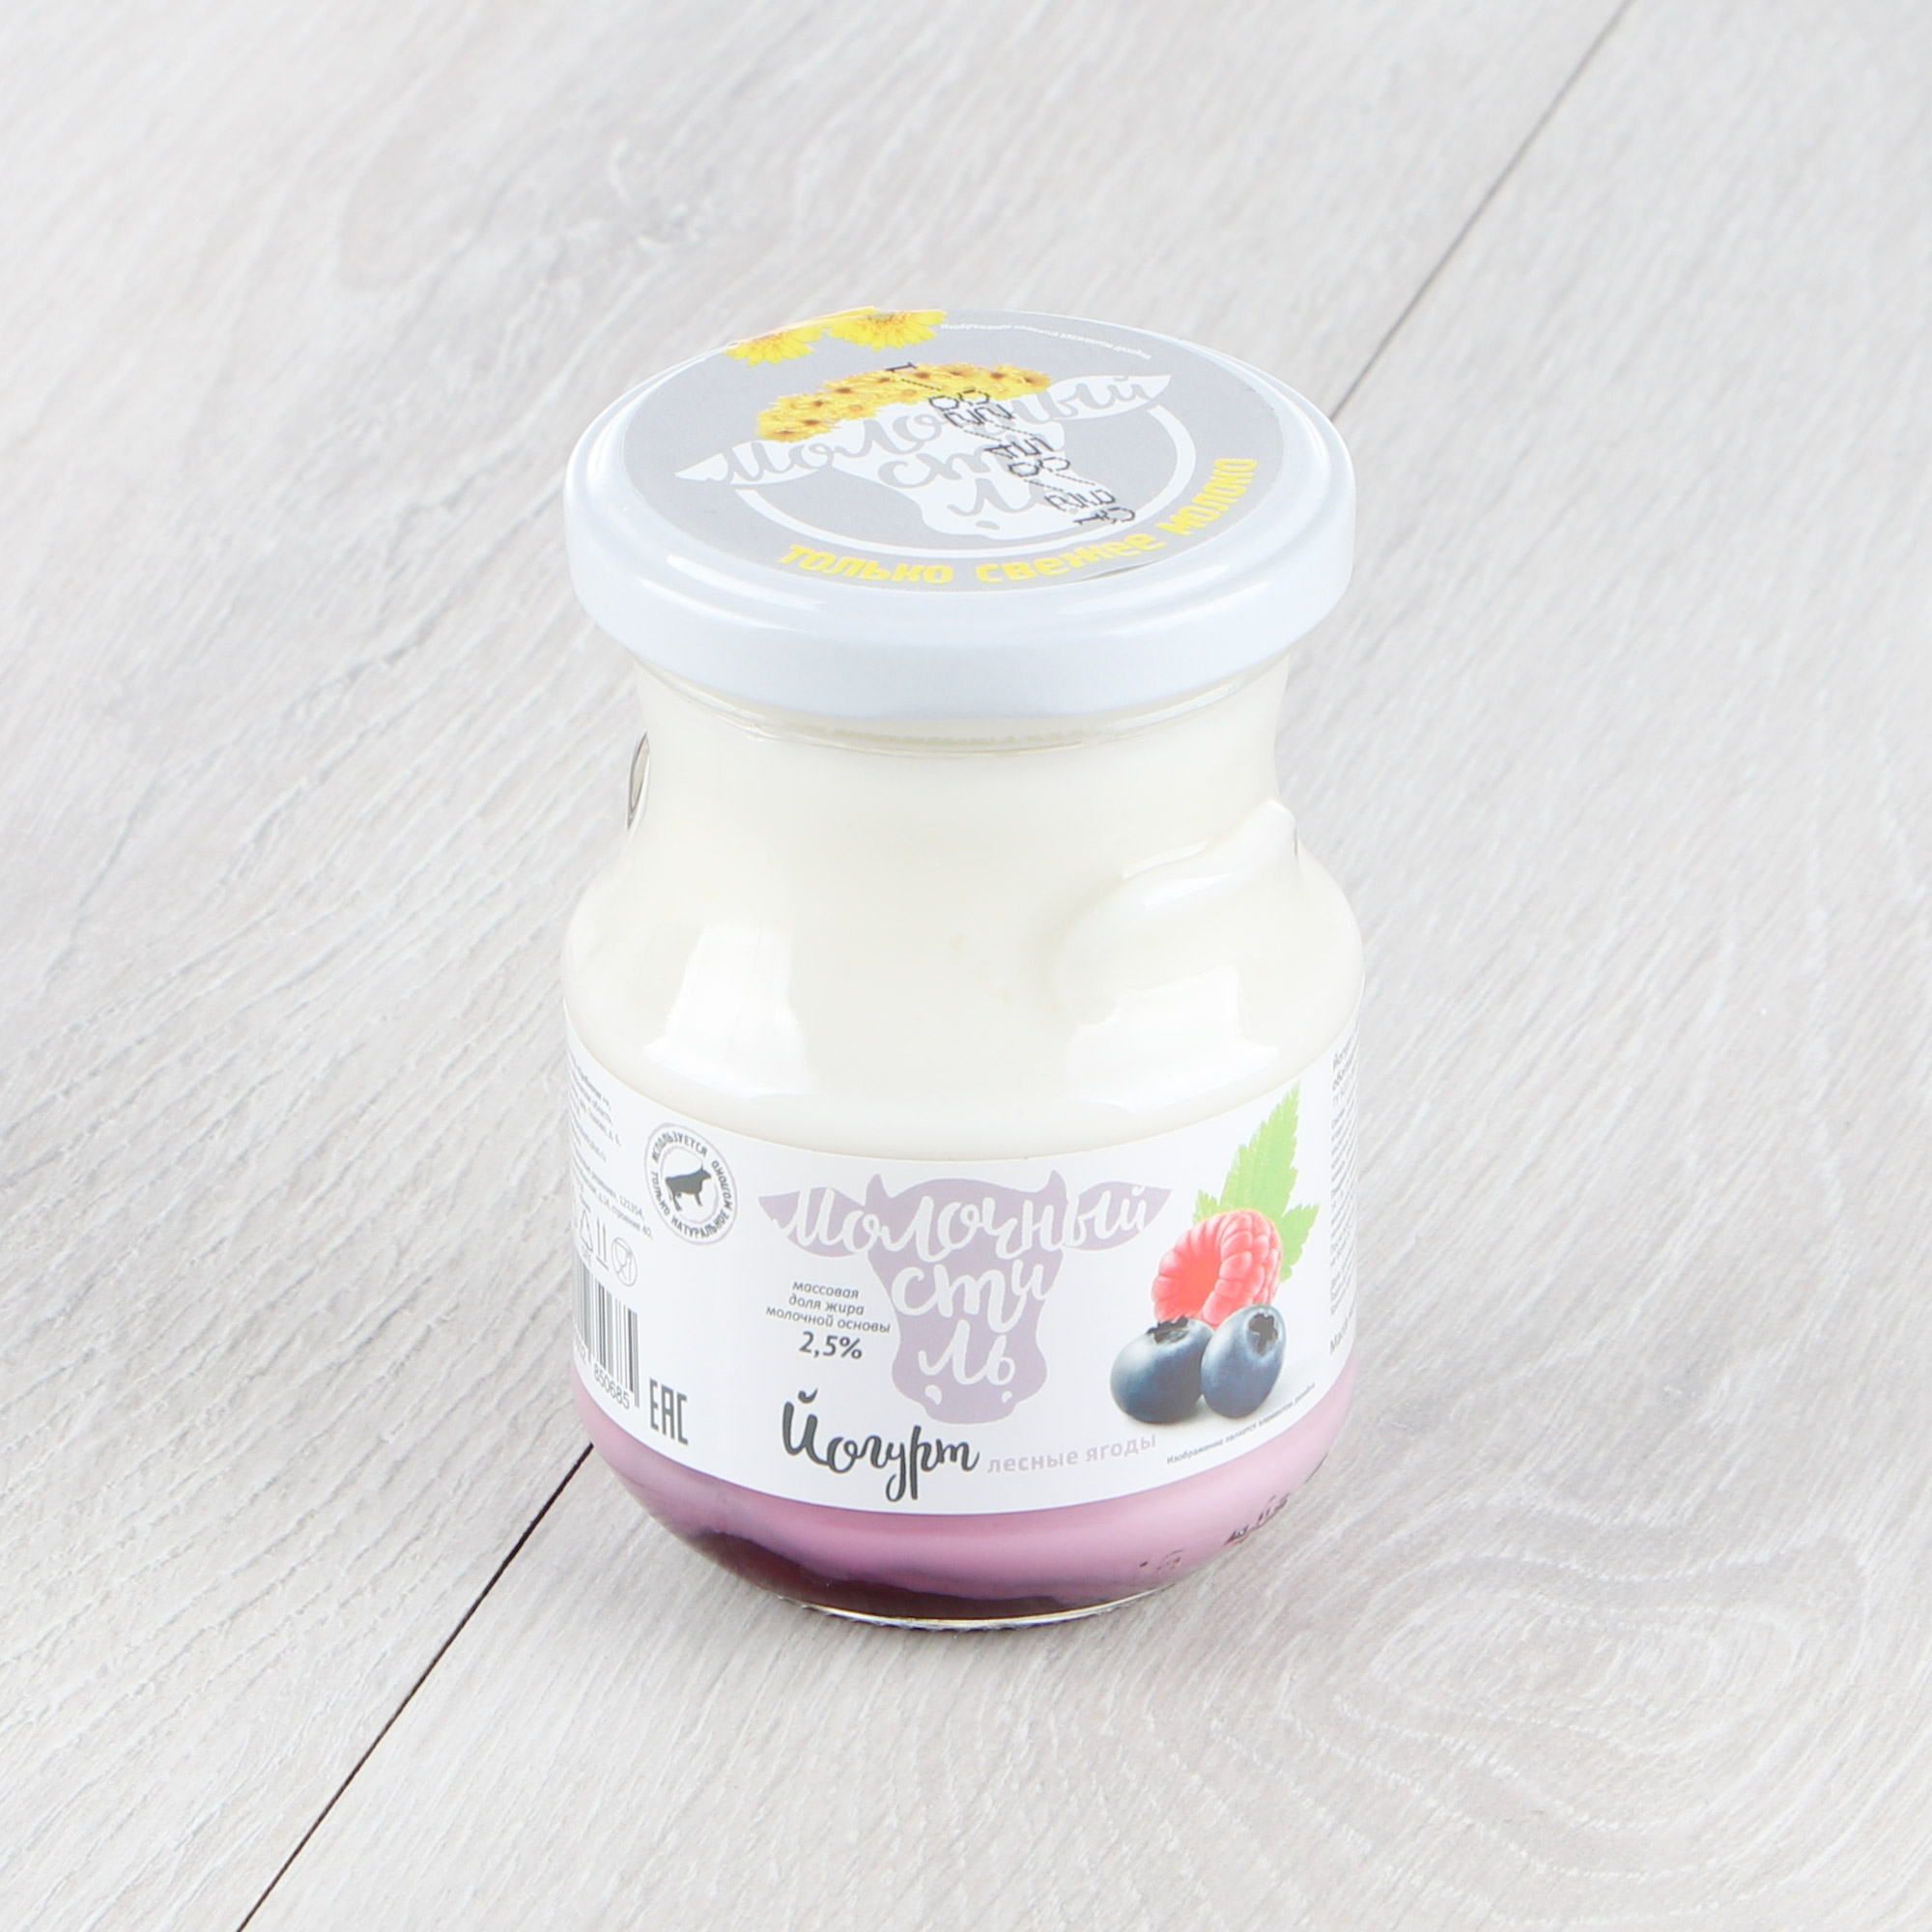 Йогурт Молочный стиль Лесные ягоды 2,5% 250 г